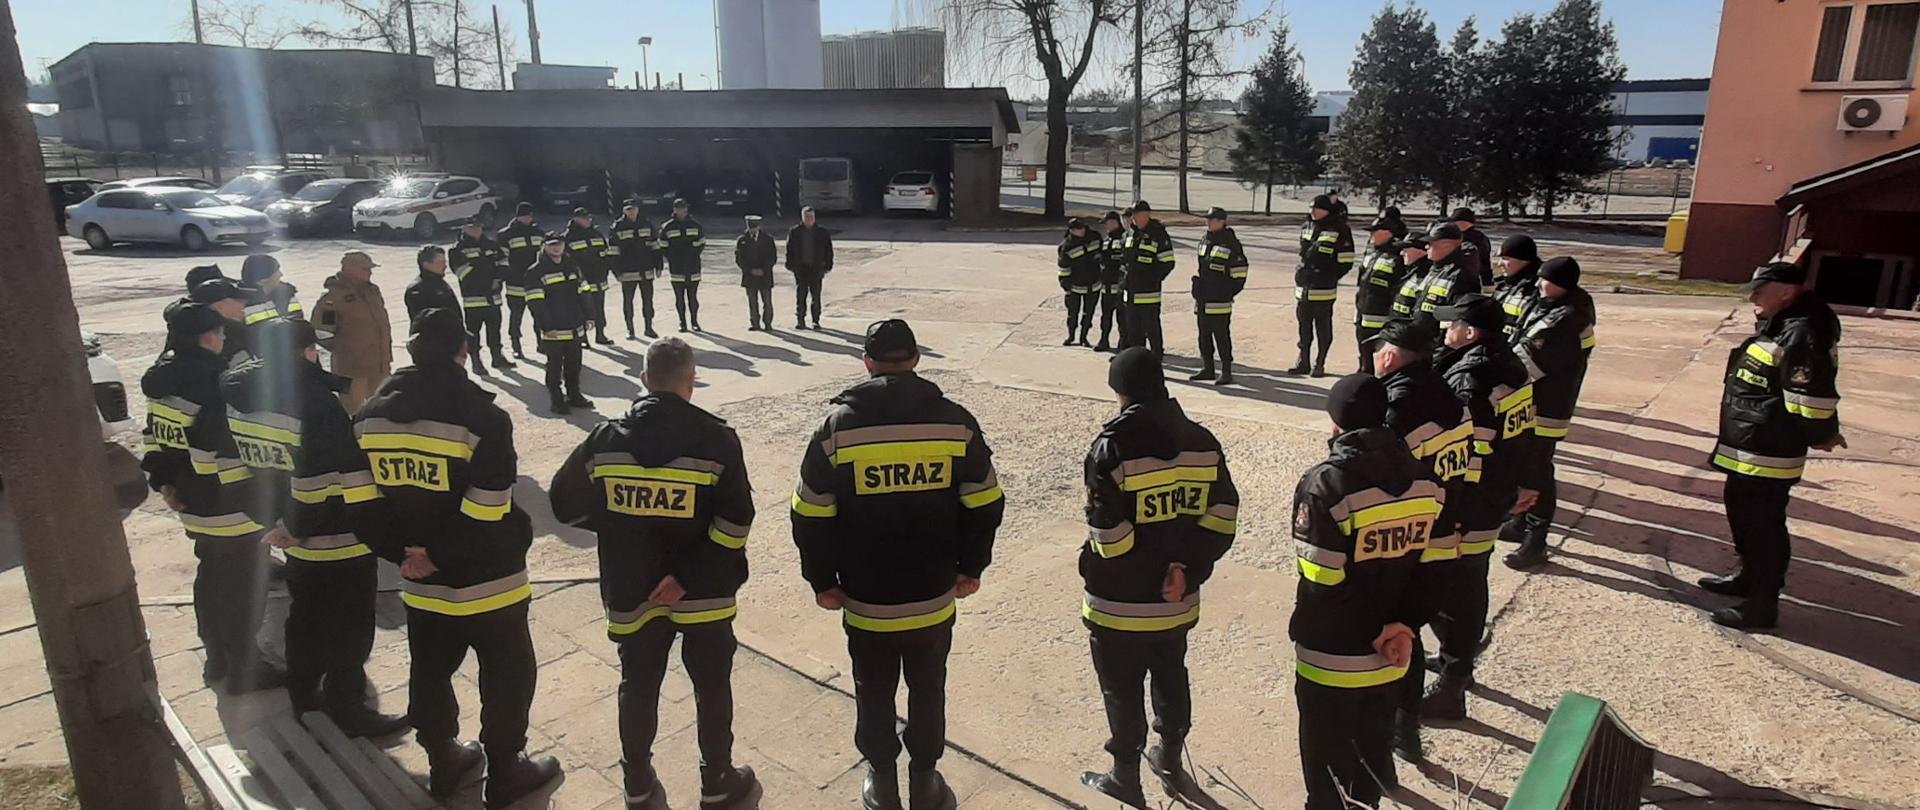 Na betonowym placu w okręgu stoi kilkudziesięciu strażaków w czarnych mundurach bojowych.